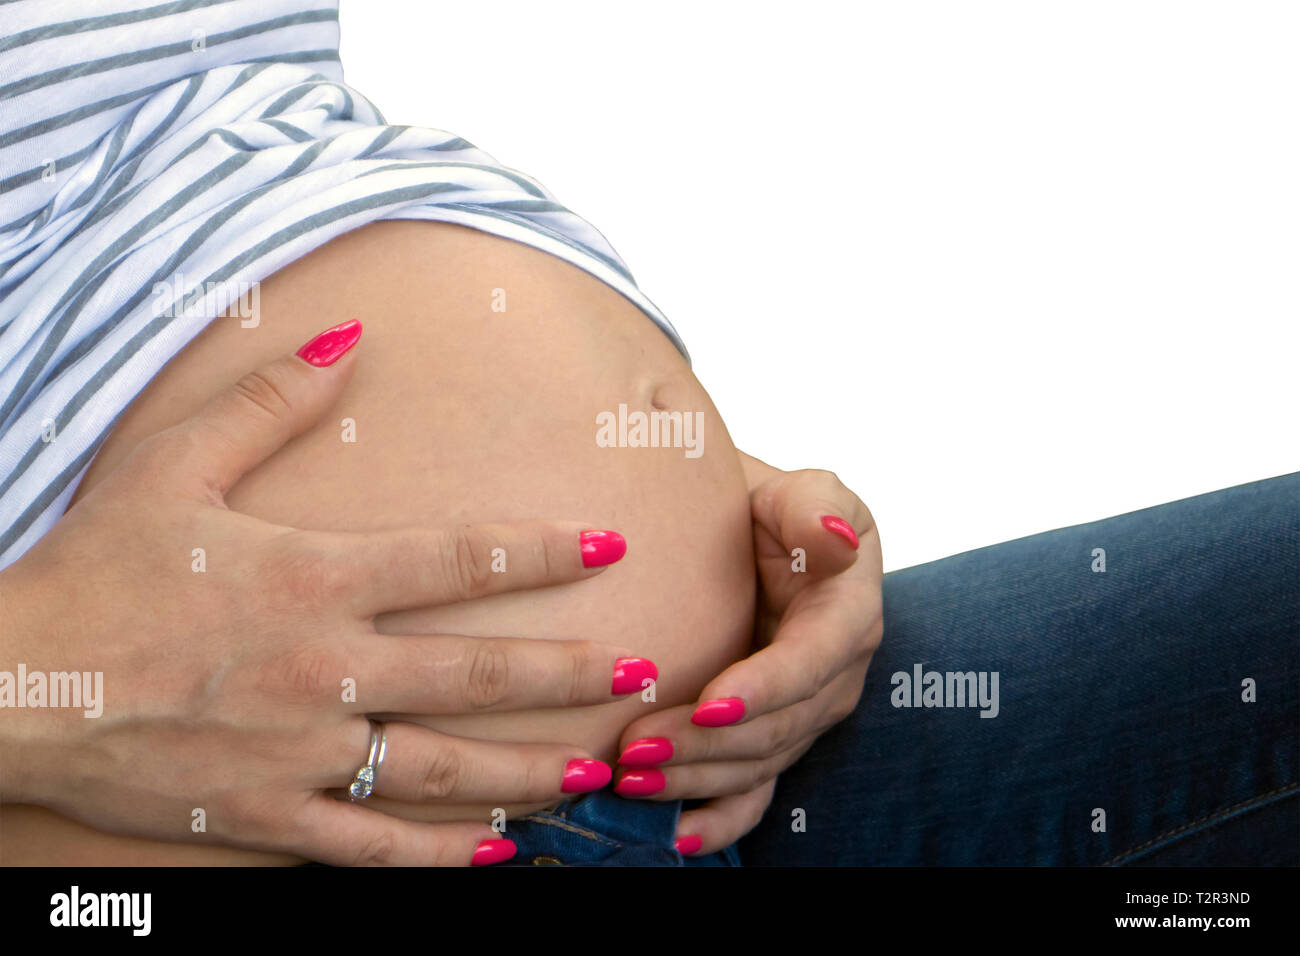 Cute pregnant belly et woman's hands with manicured nails sur il isolé sur fond blanc Banque D'Images